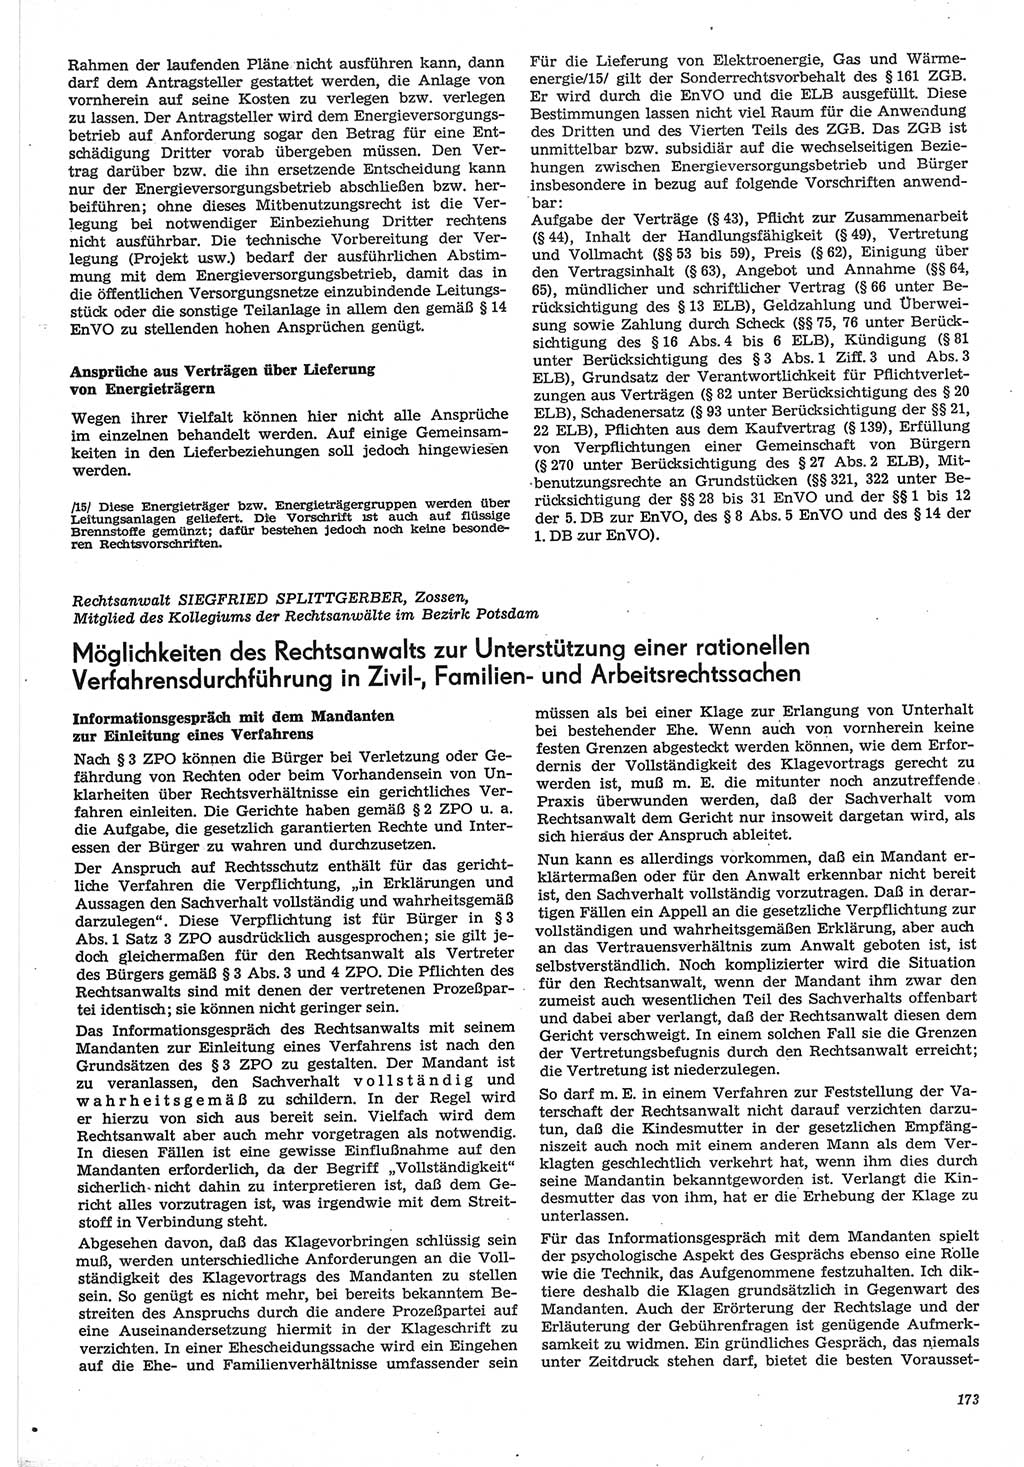 Neue Justiz (NJ), Zeitschrift für Recht und Rechtswissenschaft-Zeitschrift, sozialistisches Recht und Gesetzlichkeit, 31. Jahrgang 1977, Seite 173 (NJ DDR 1977, S. 173)